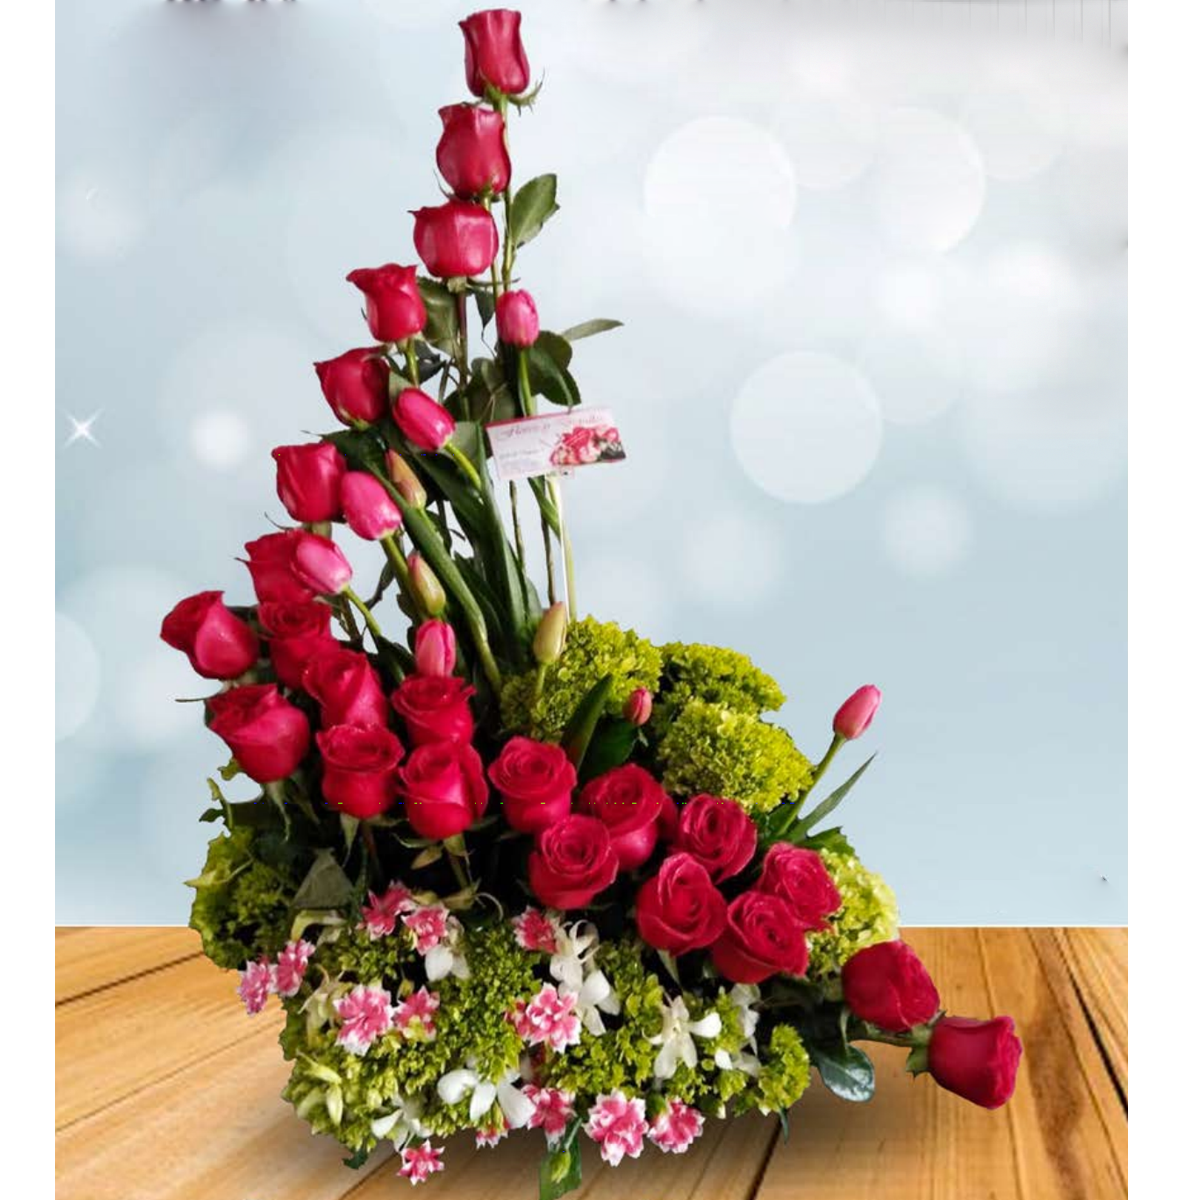 Details 100 picture arreglo floral con tulipanes y rosas